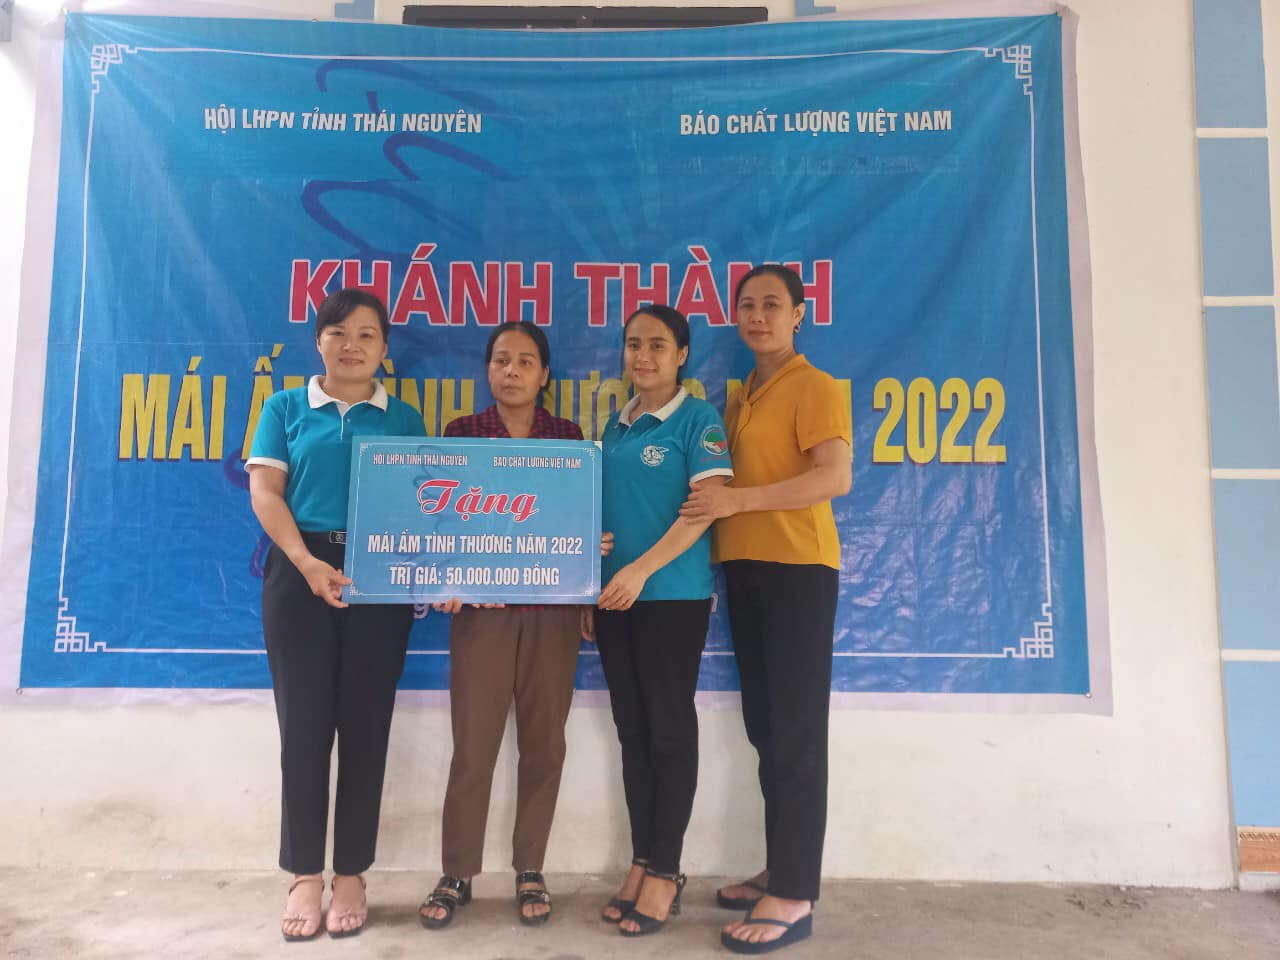 VietQ.vn cùng Hội LHPN tỉnh Thái Nguyên tiếp tục khánh thành nhà mái ấm tình thương tặng hội viên phụ nữ nghèo